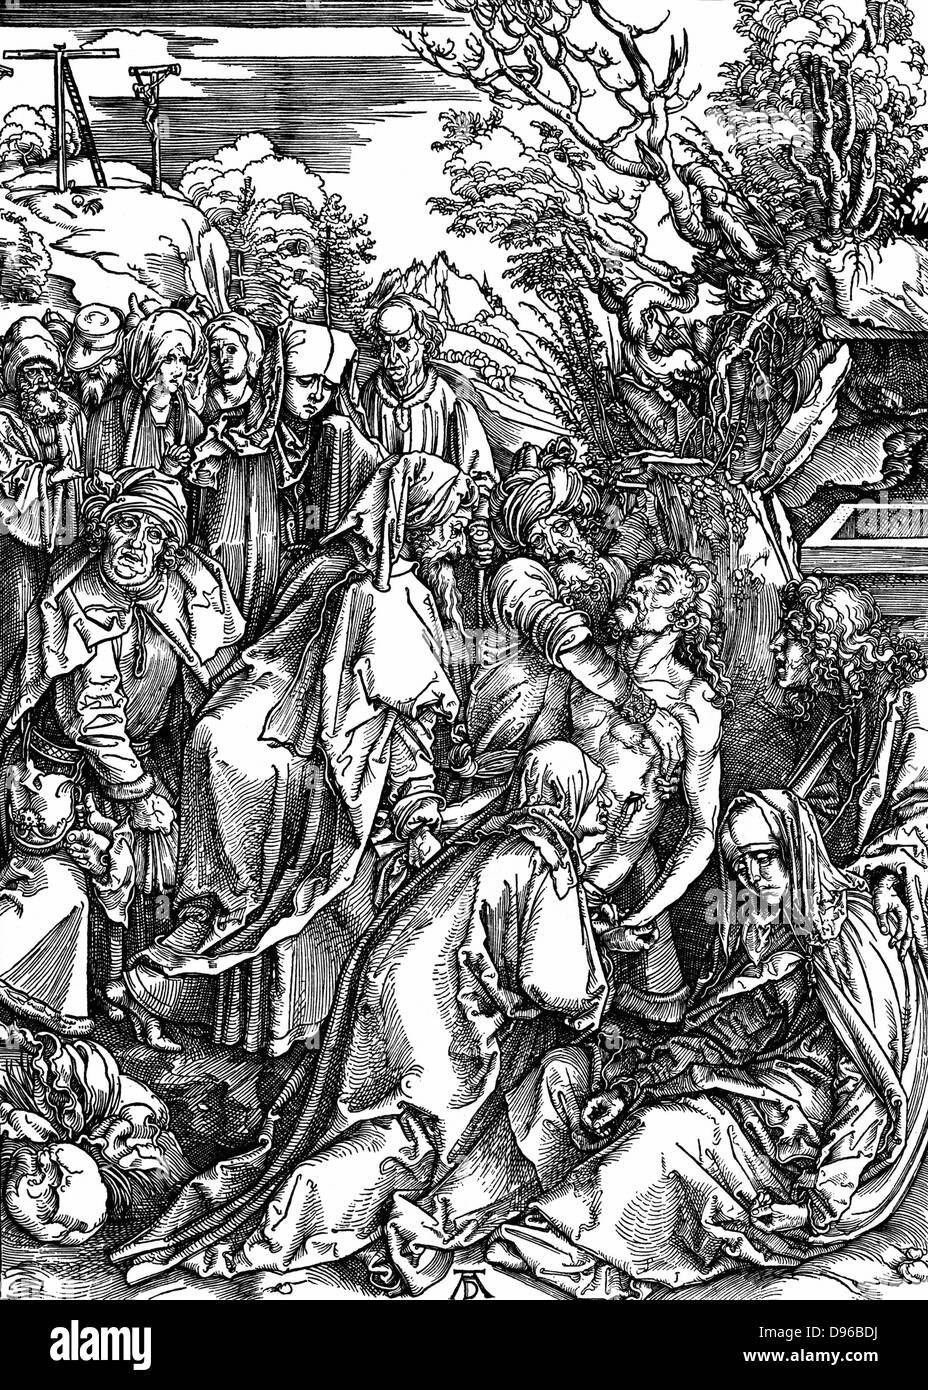 La tumulazione. Silografia di Albrecht Dürer dalla sua serie di sette xilografie per la grande passione c1497-1500 Foto Stock